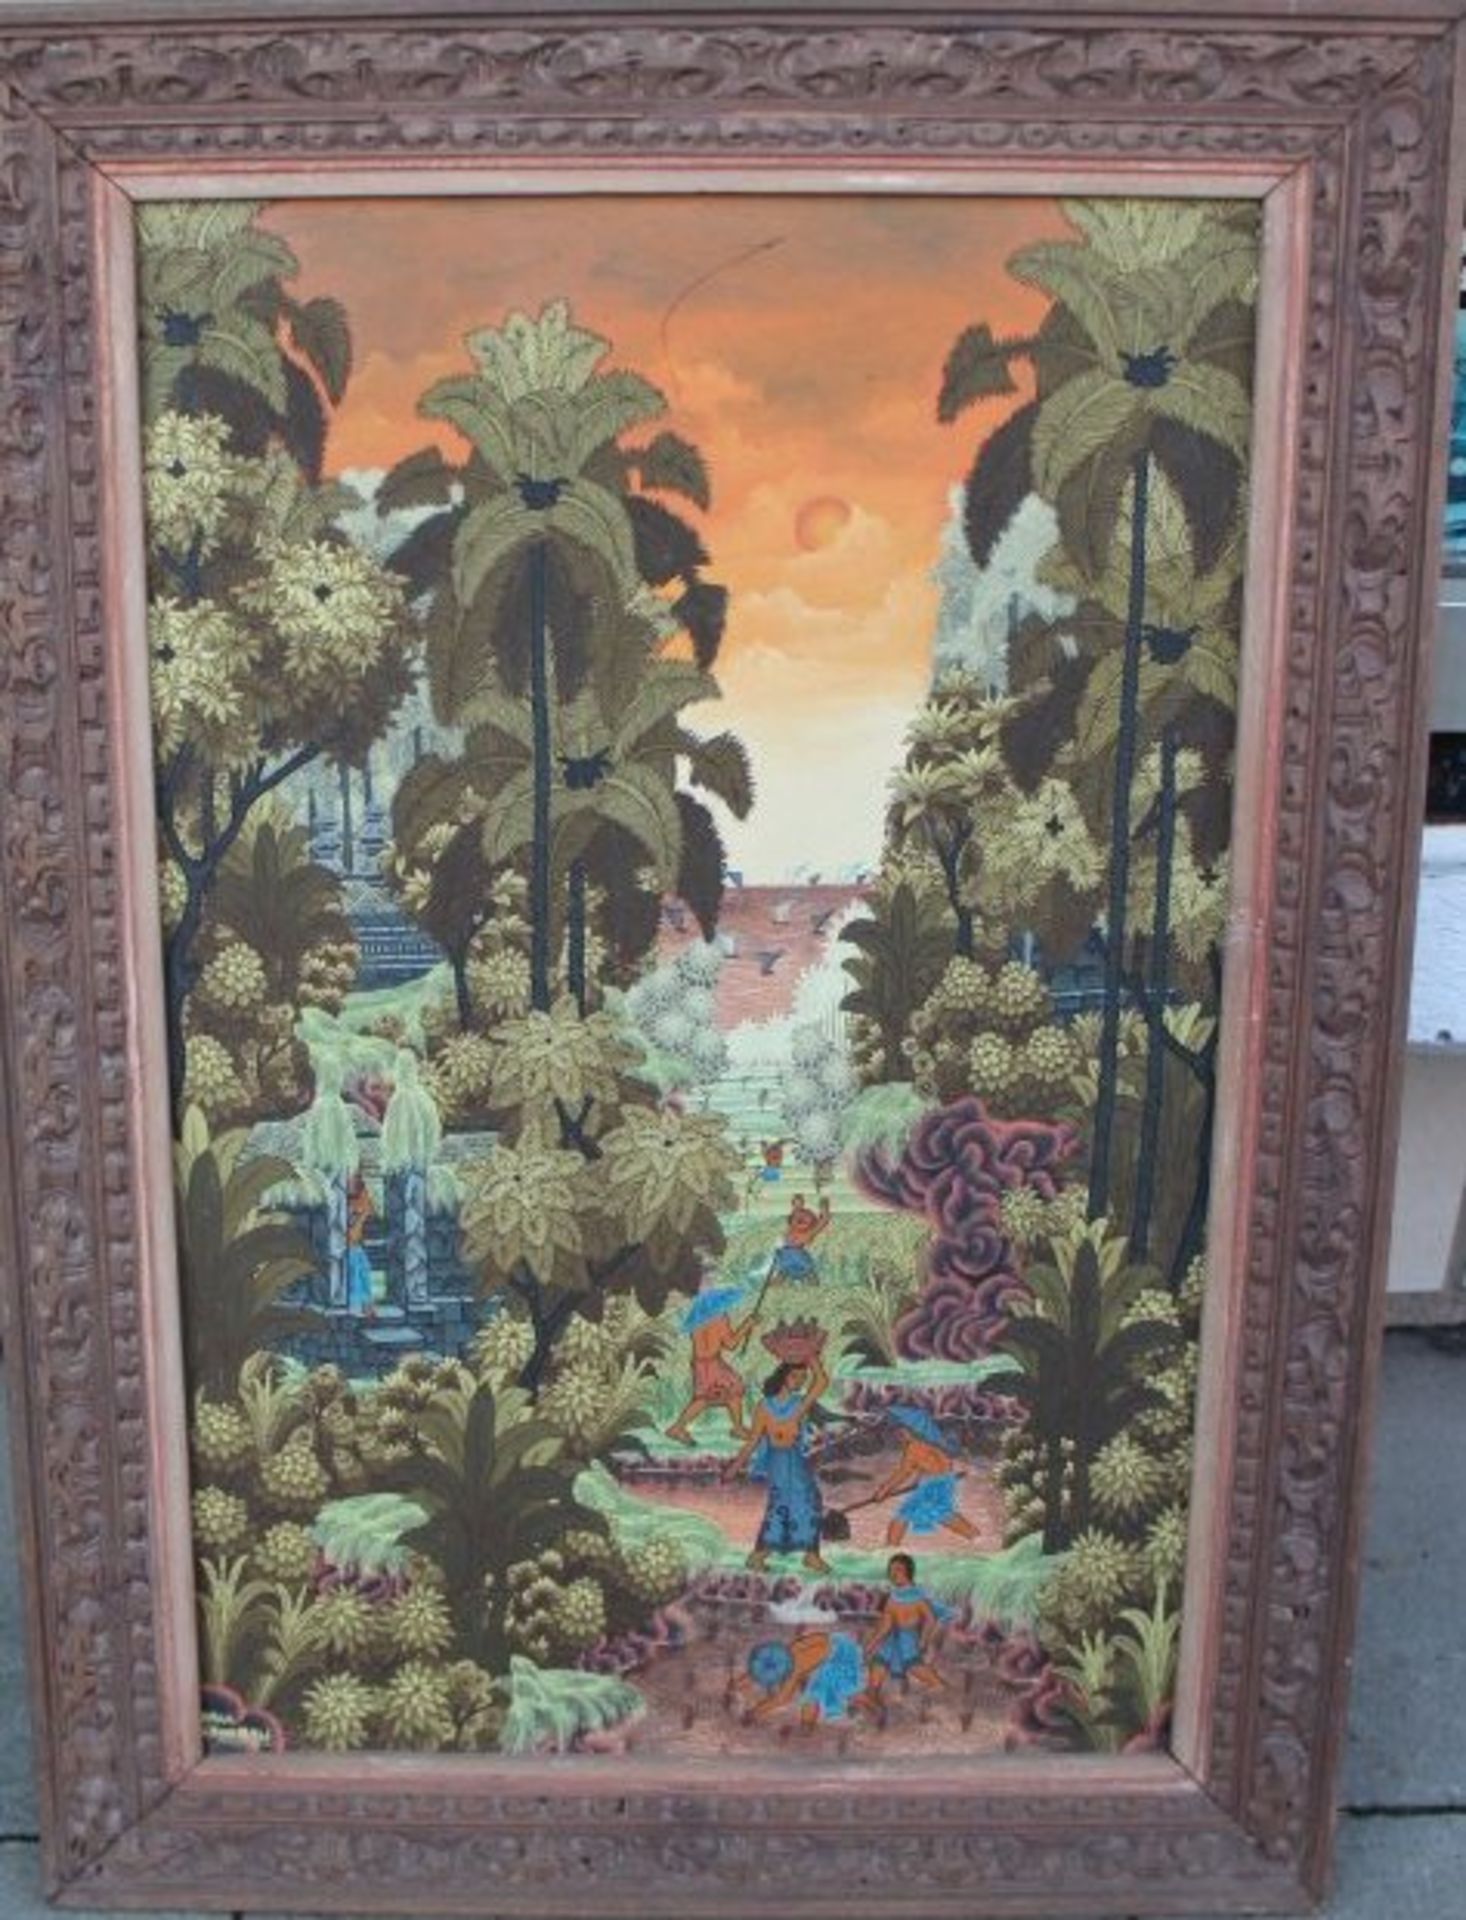 J. Arka, Ubud, Bali "Landschaft", Mischtechnik auf Leinen, beschnitzter Rahmen, RG 70x50 cm - Image 2 of 4